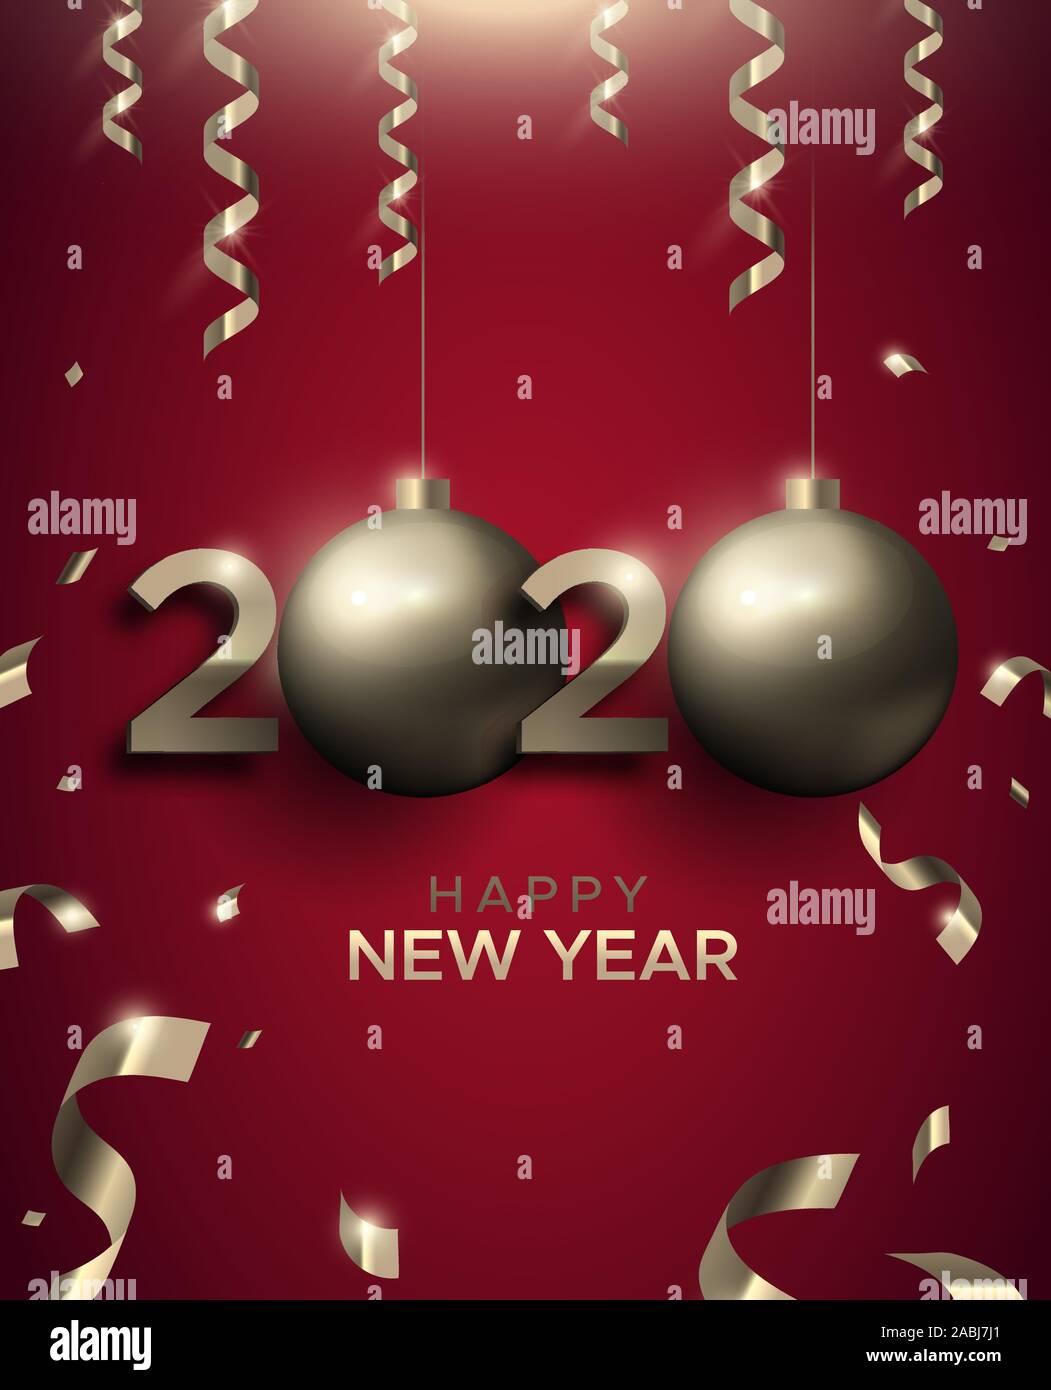 Happy New Year Karte, Gold 2020 Christbaumkugel ornament unterzeichnen. Luxus Typografie Anzahl Hintergrund für Party Einladung oder Jahreszeiten Gruß. Stock Vektor